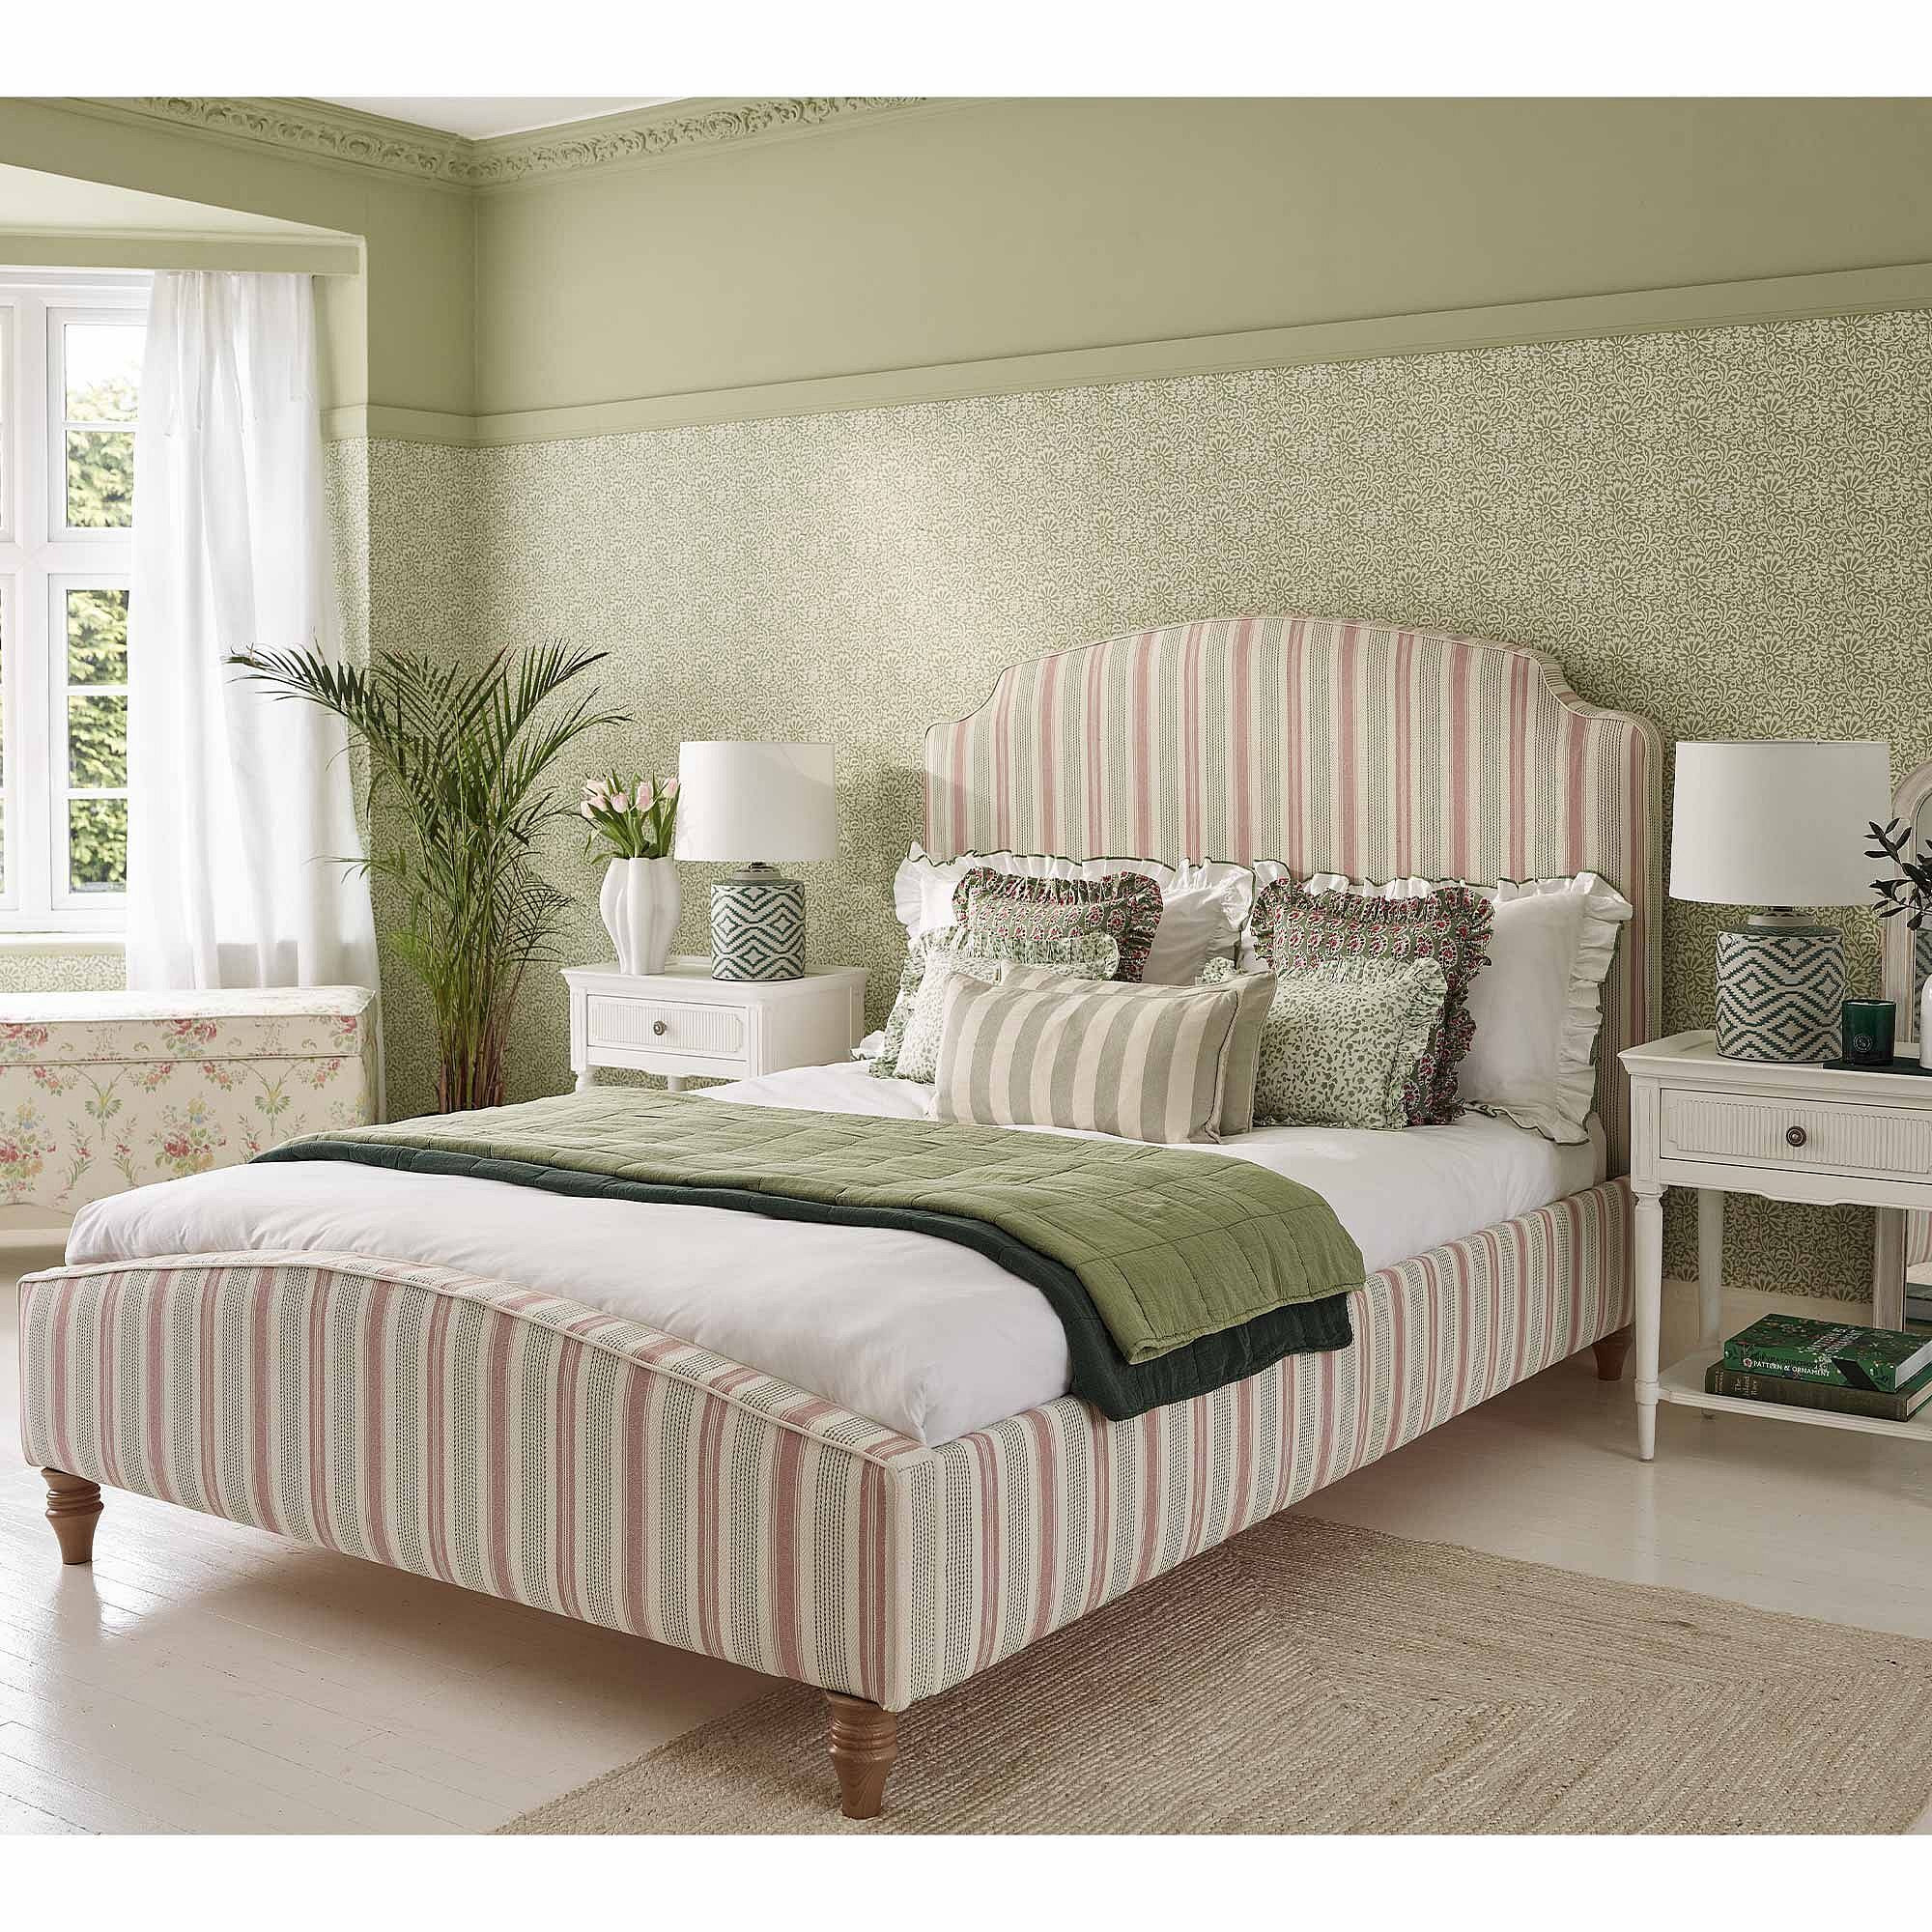 Pavilion Garden Stripe Upholstered Bed (Super King Size Bed) - image 1